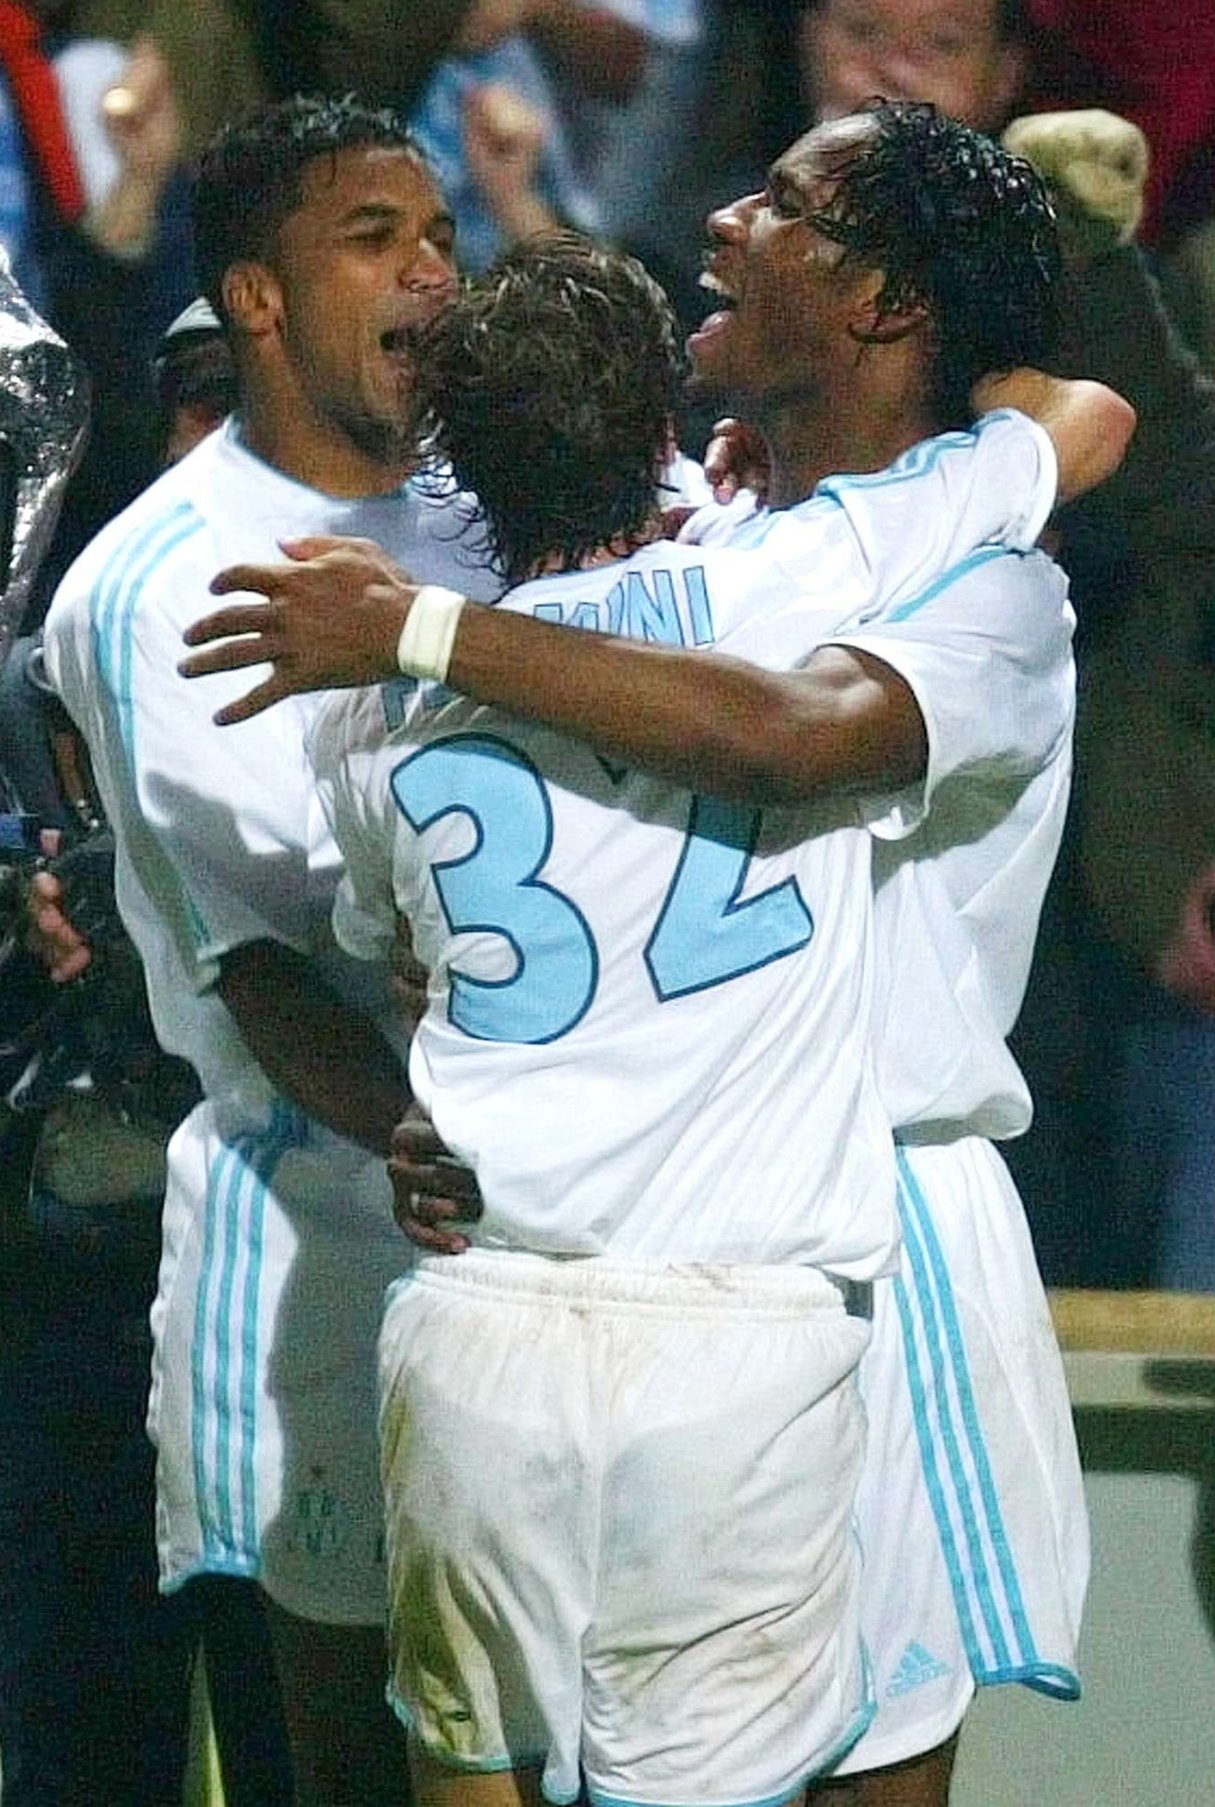 Didier Drogba de Marseille, à droite, et ses coéquipiers Mathieu Flamini et Habib Beye, à gauche, réagissent après le deuxième but de Drogba, lors de leur match de demi-finale de Coupe UEFA contre Newcastle, jeudi 6 mai 2004 à Marseille. &copy; LIONEL CIRONNEAU/AP/SIPA